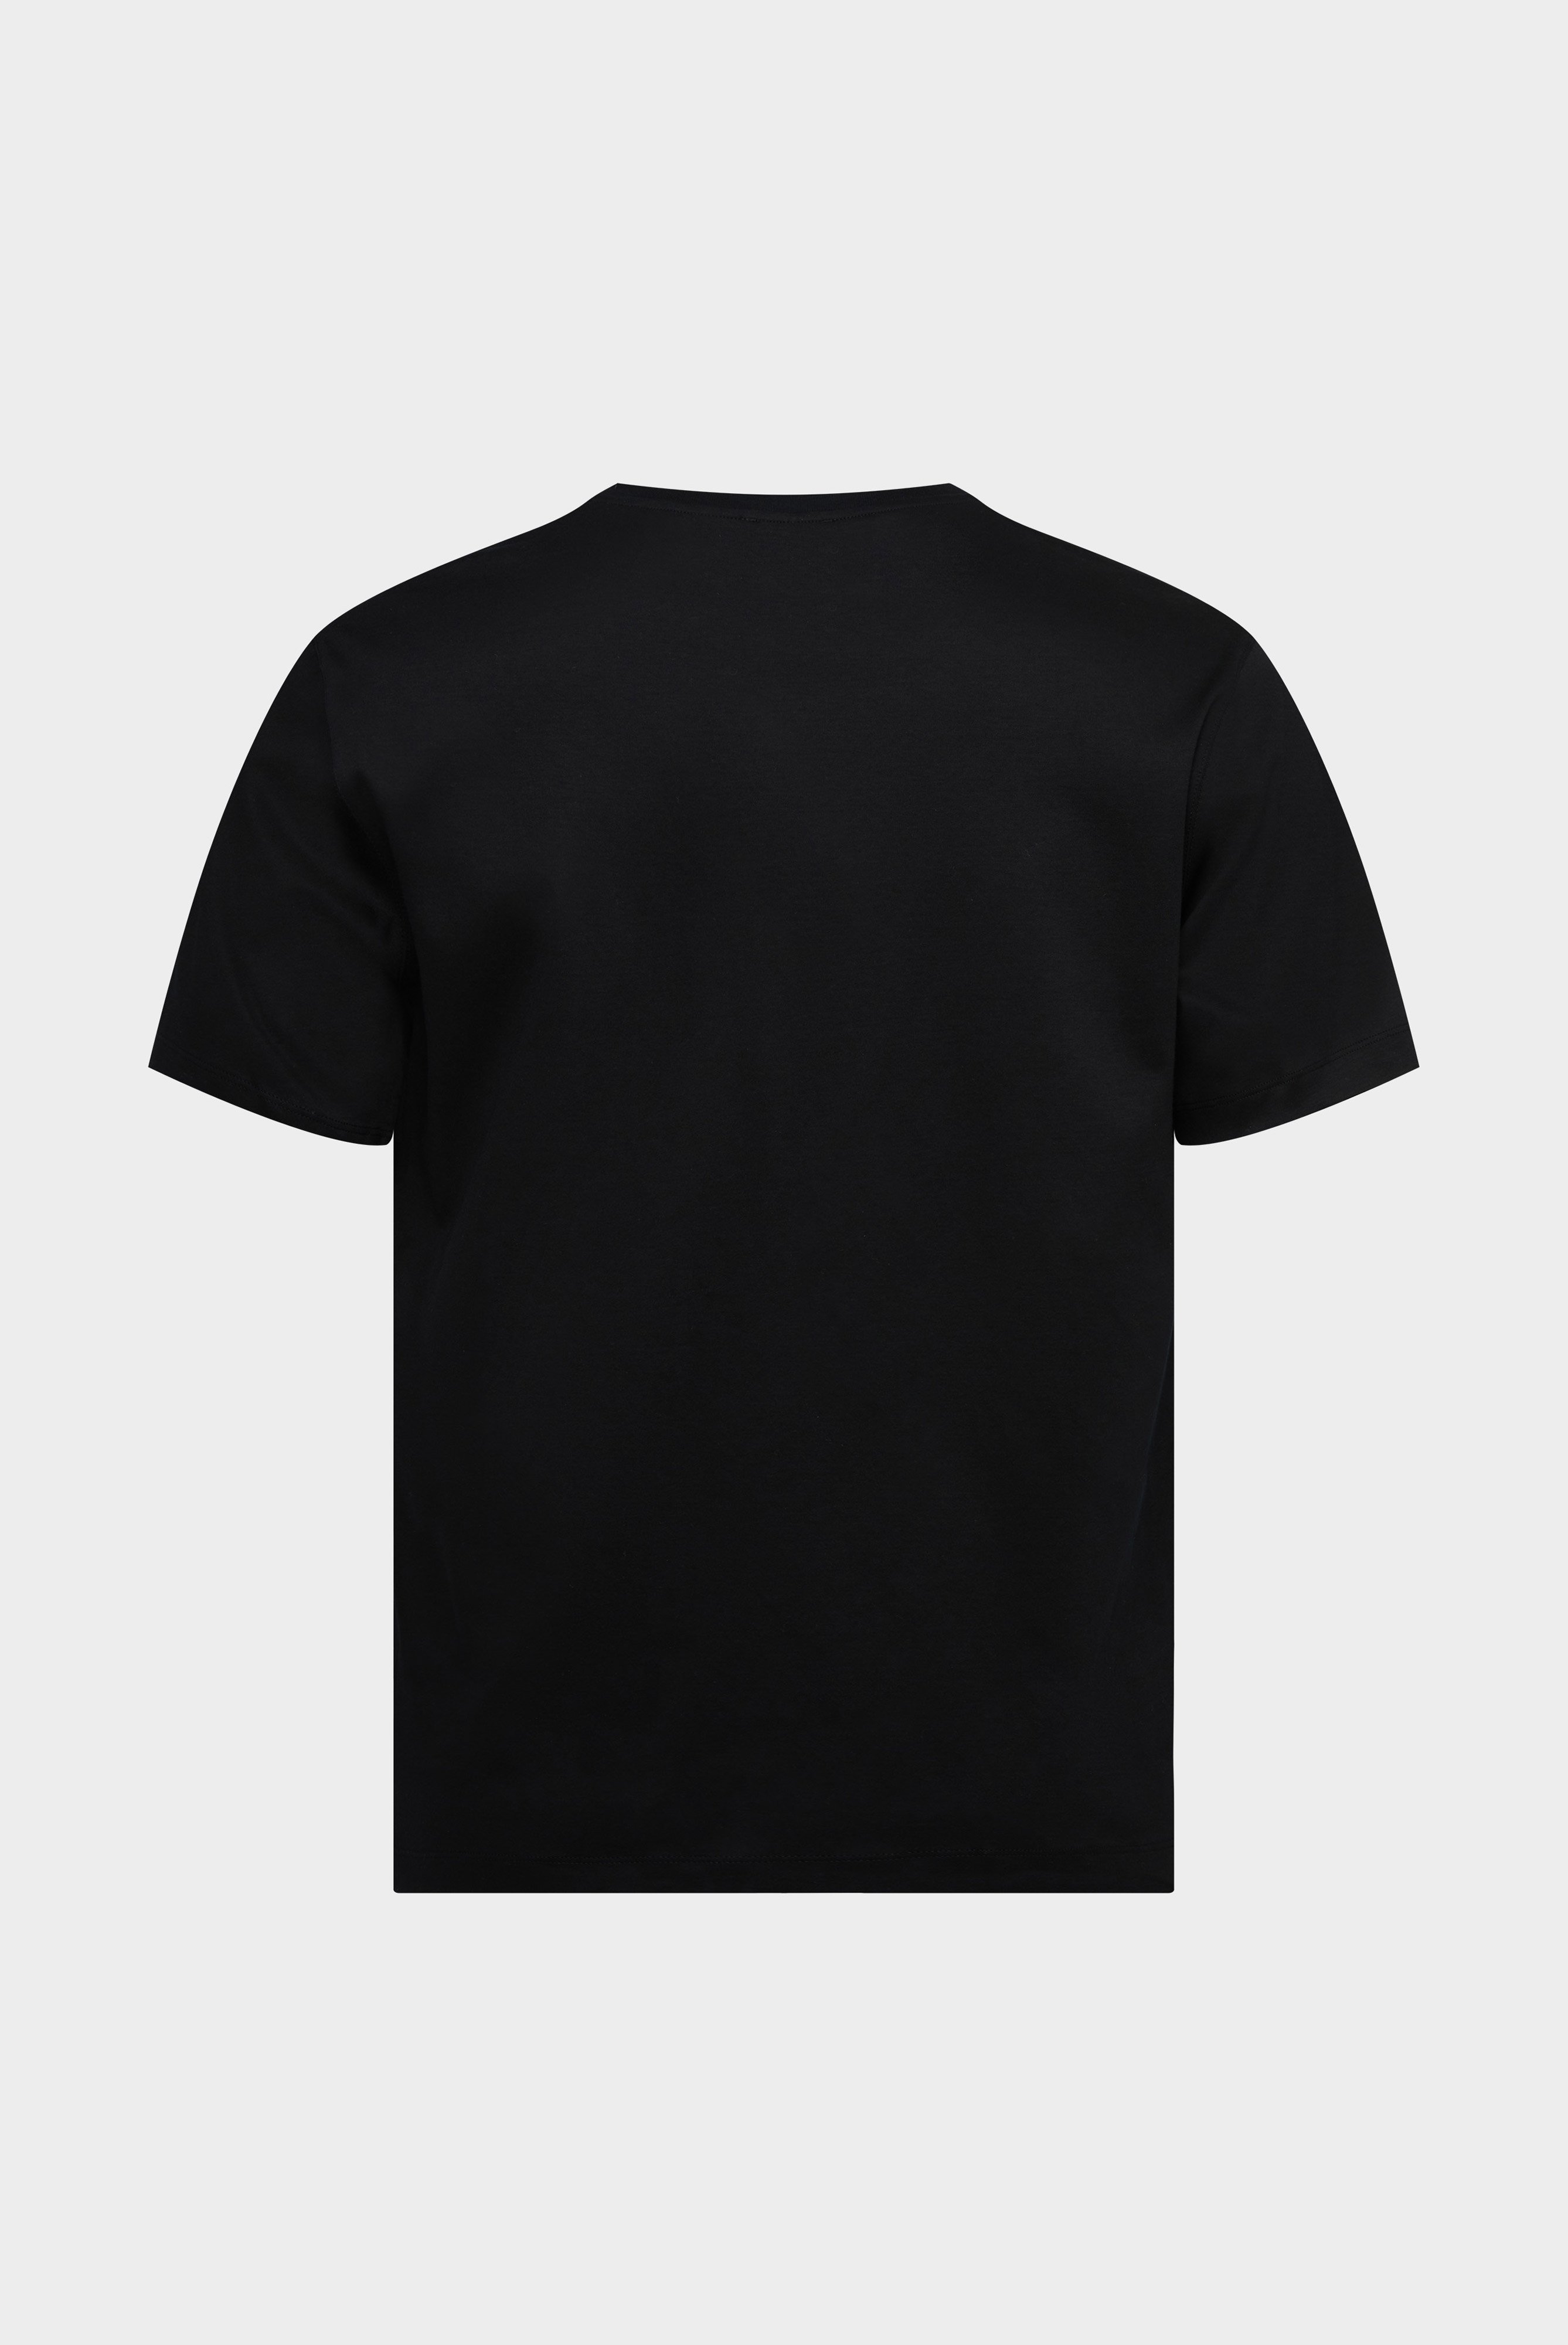 T-Shirts+Oversize Jersey T-Shirt mit Brusttasche+20.1776.GZ.180031.099.M